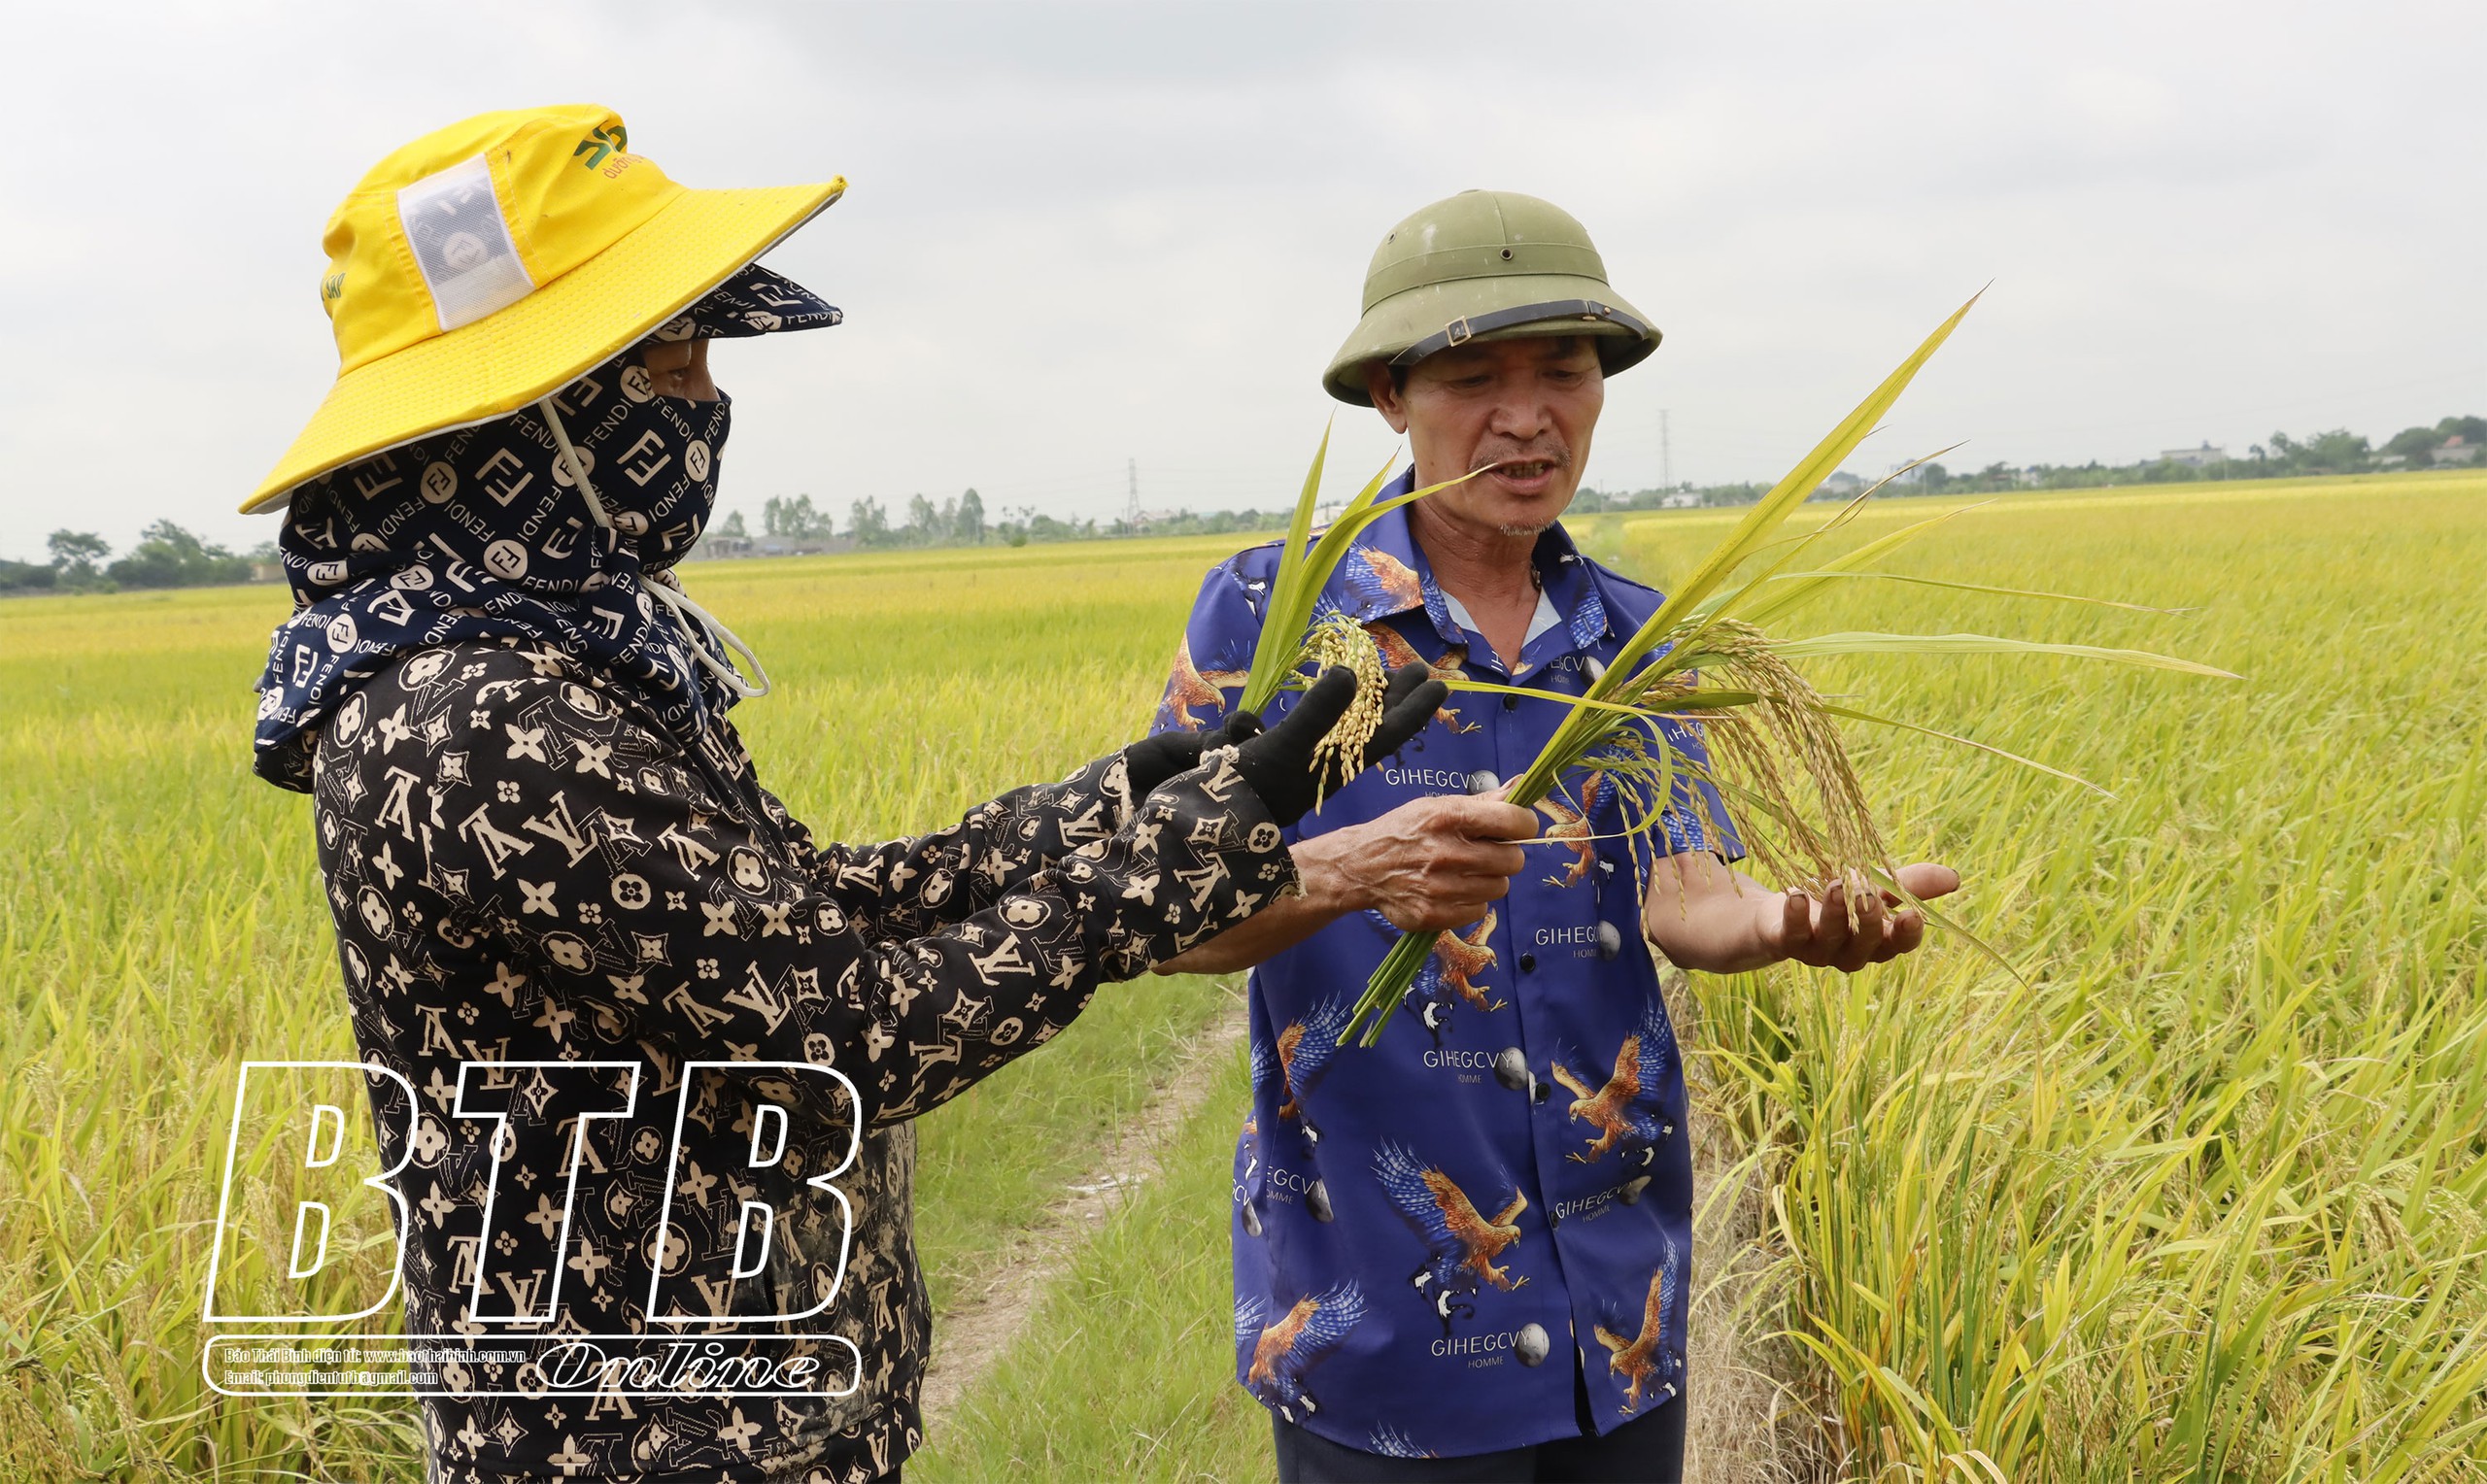 Những nông dân nhiều ruộng ở Thái Bình, mỗi vụ thu trăm tấn thóc, làm lúa lãi 600 - 800 triệu/năm- Ảnh 2.